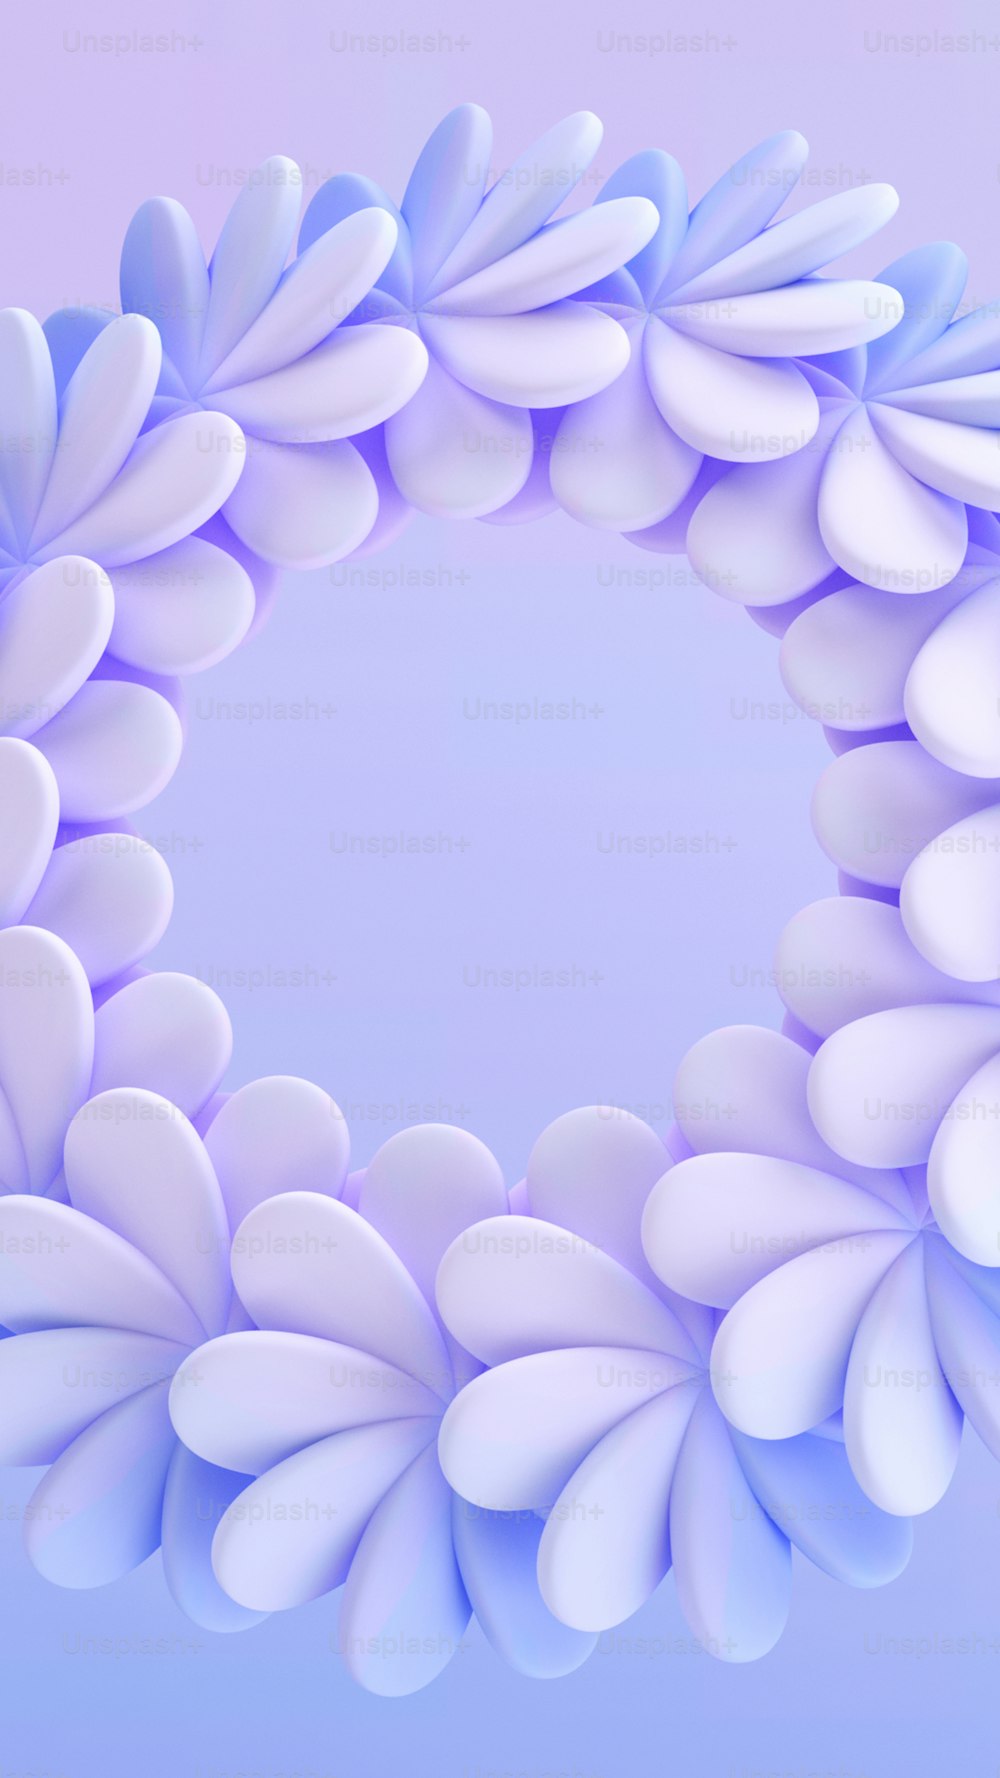 un objet circulaire bleu et blanc aux pétales blancs